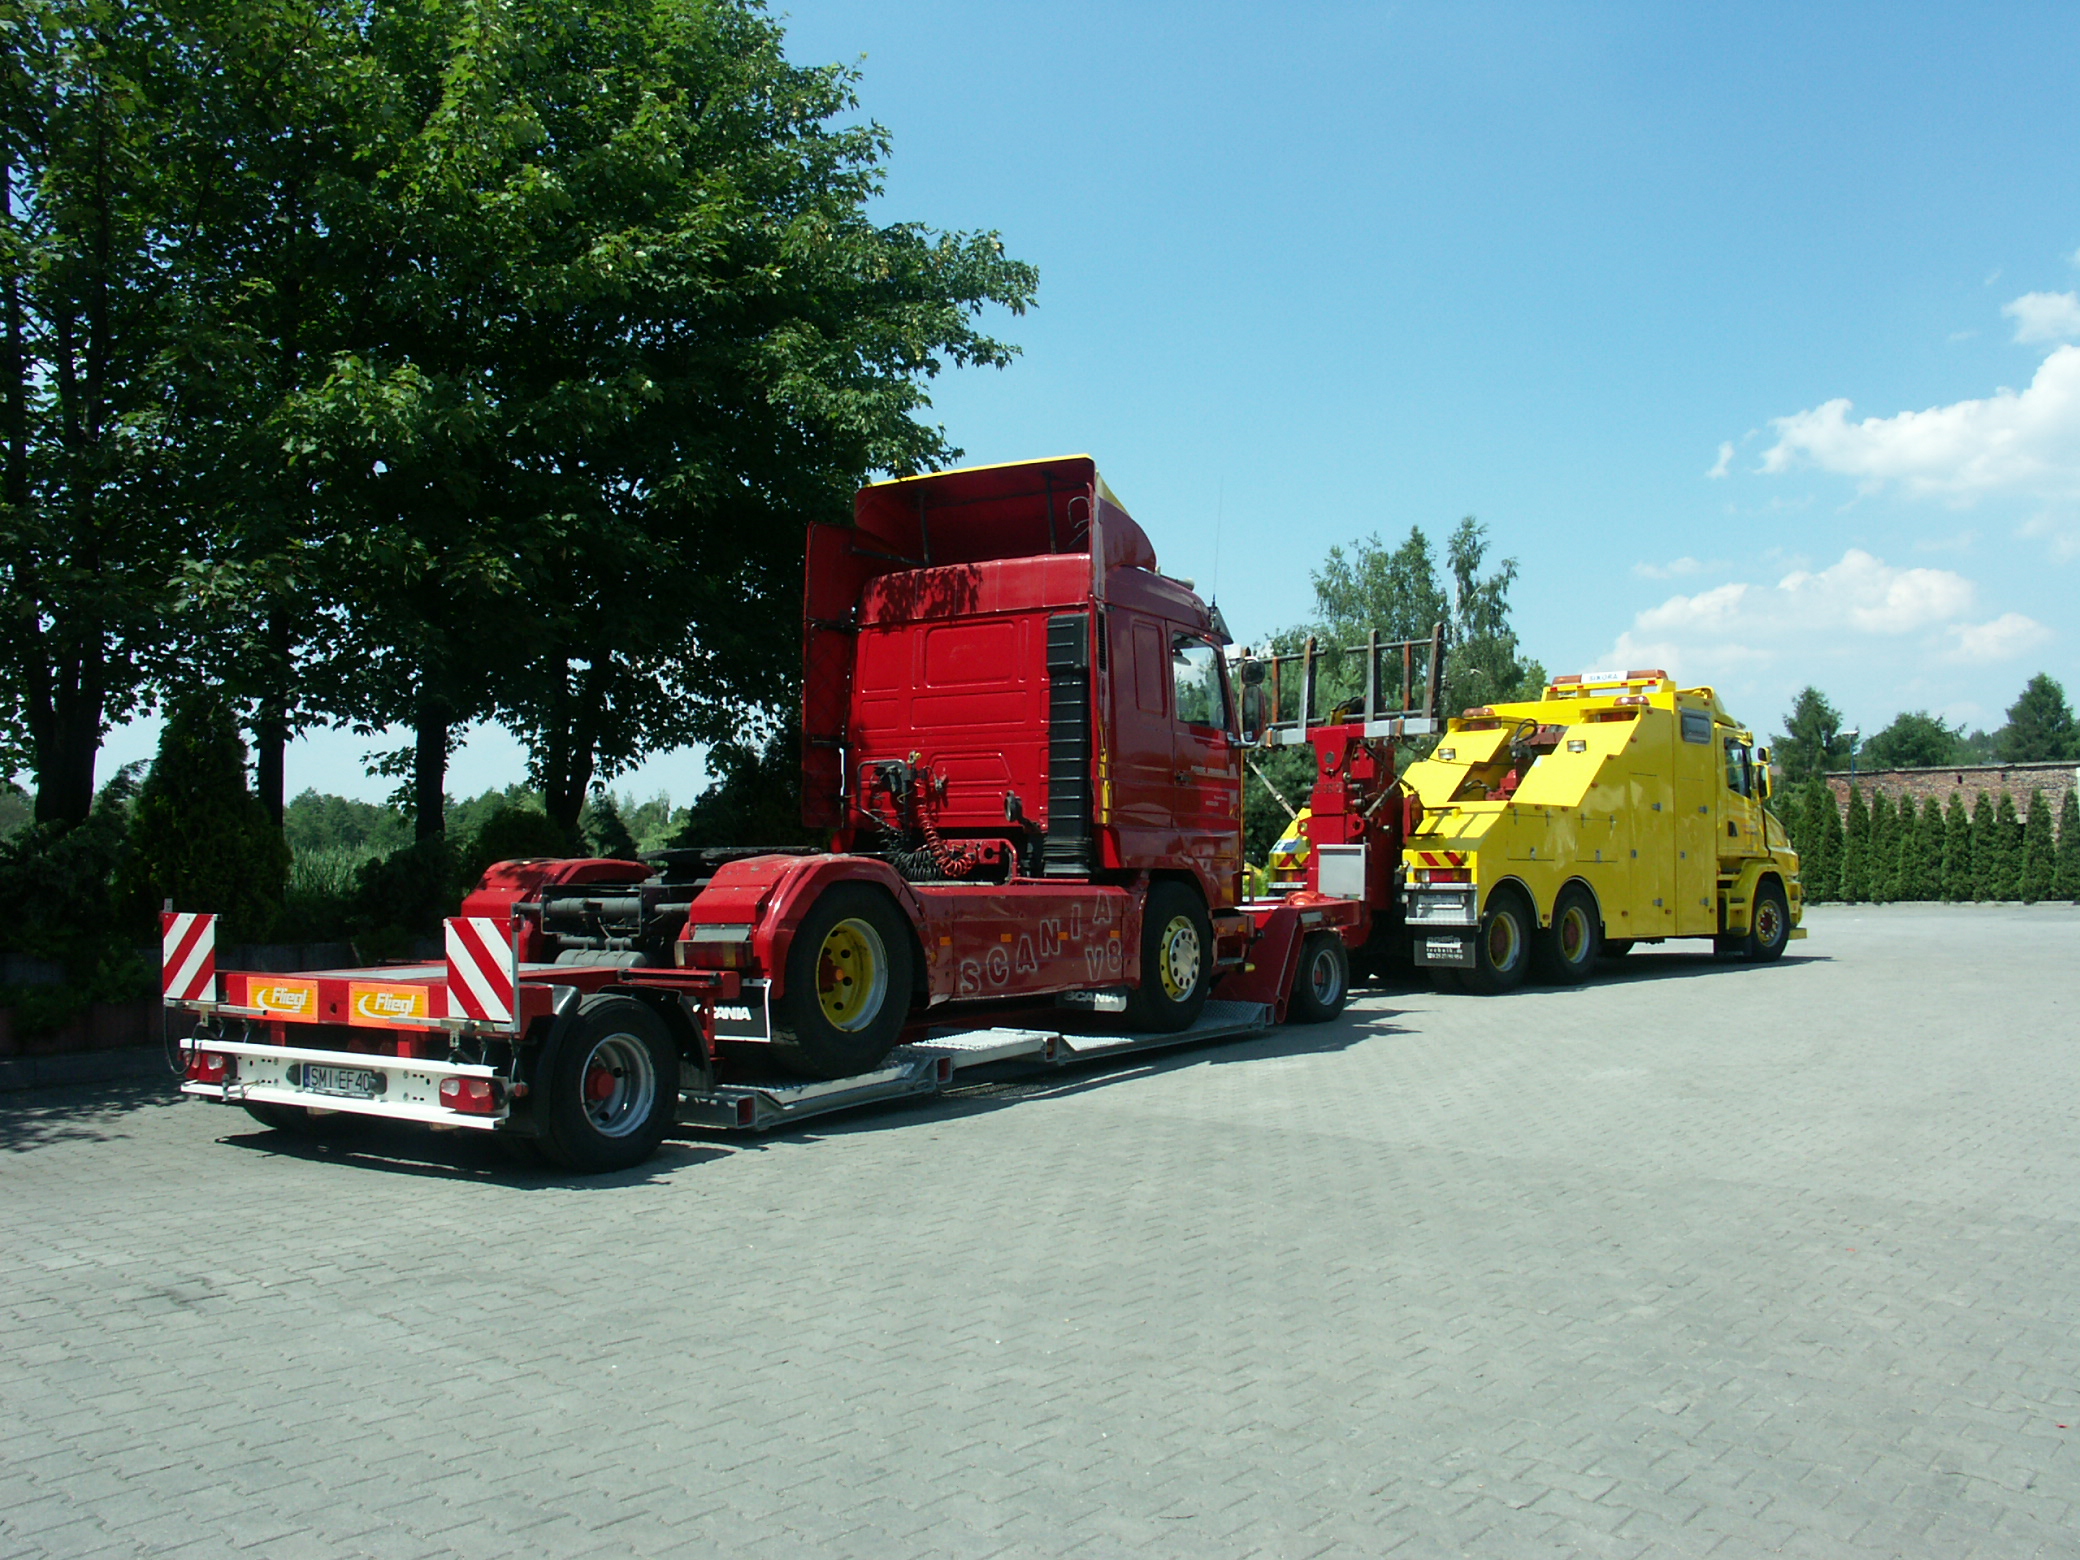  TRUCK-SERVICE  Sikora,      Pomoc Drogowa       ,pomoc drogowa ciężarowe
